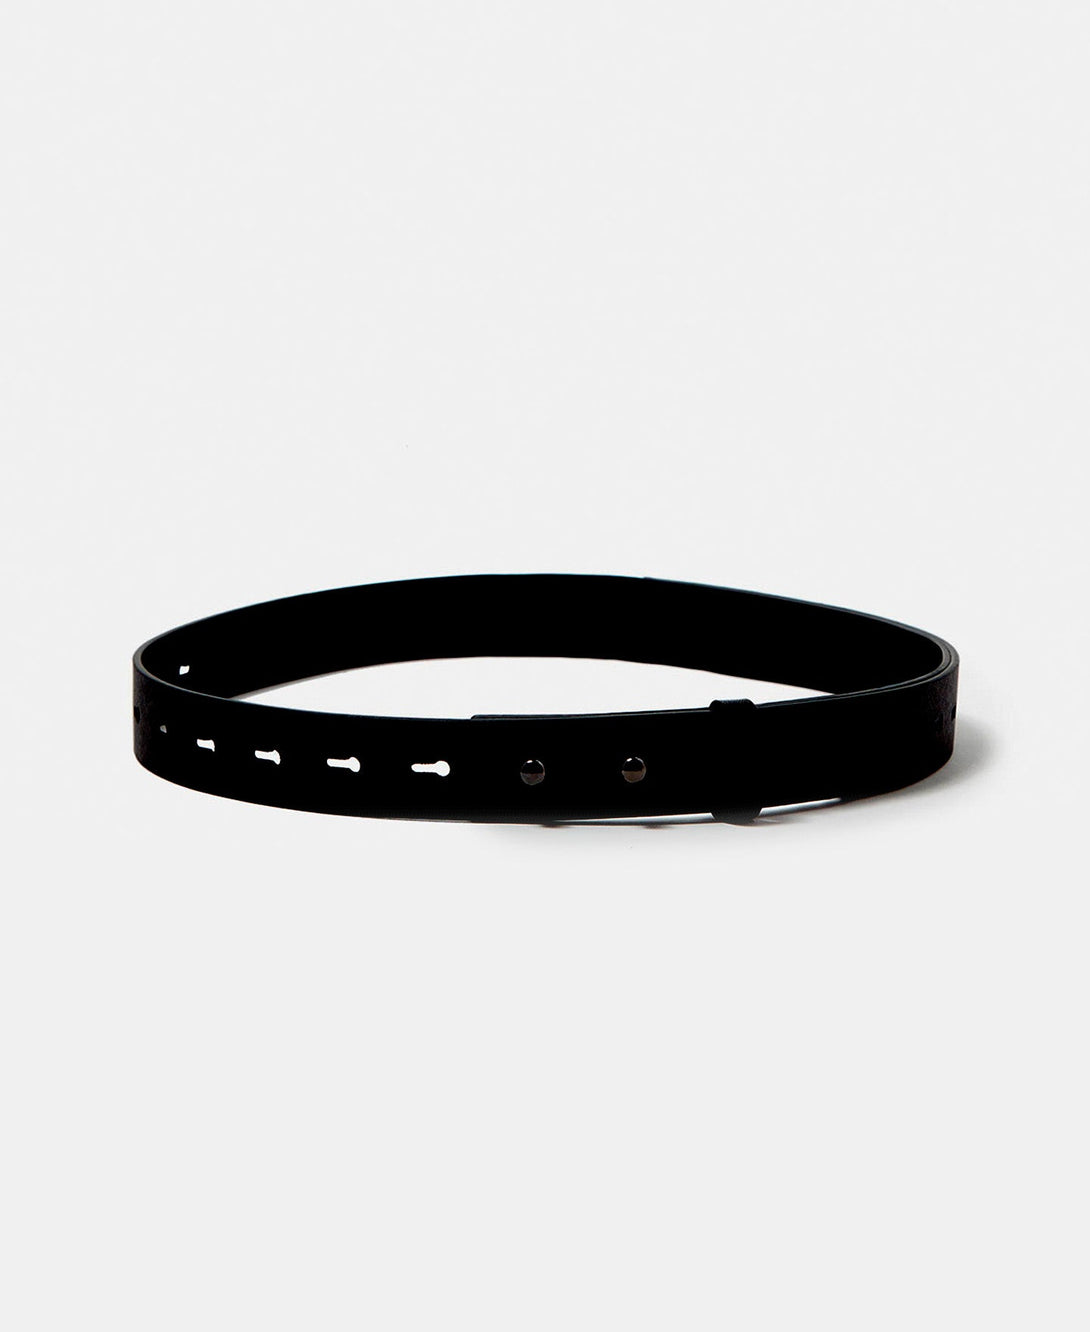 Men Belt | Black Leather Belt With No Buckle by Spanish designer Adolfo Dominguez